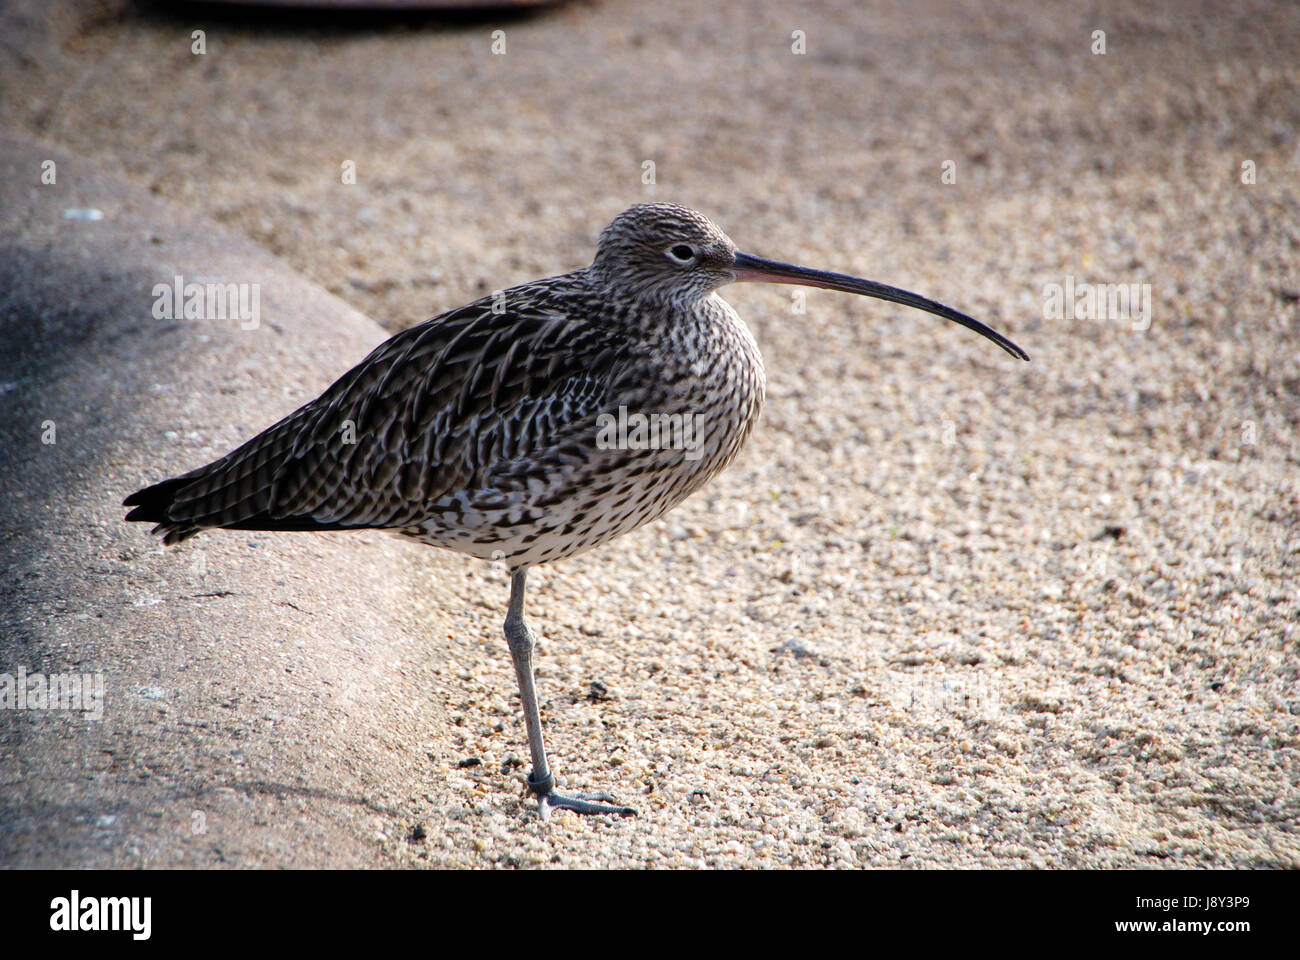 beak, beaks, sands, sand, beak, long, plumage, speckled, leg, beaks, wader, Stock Photo